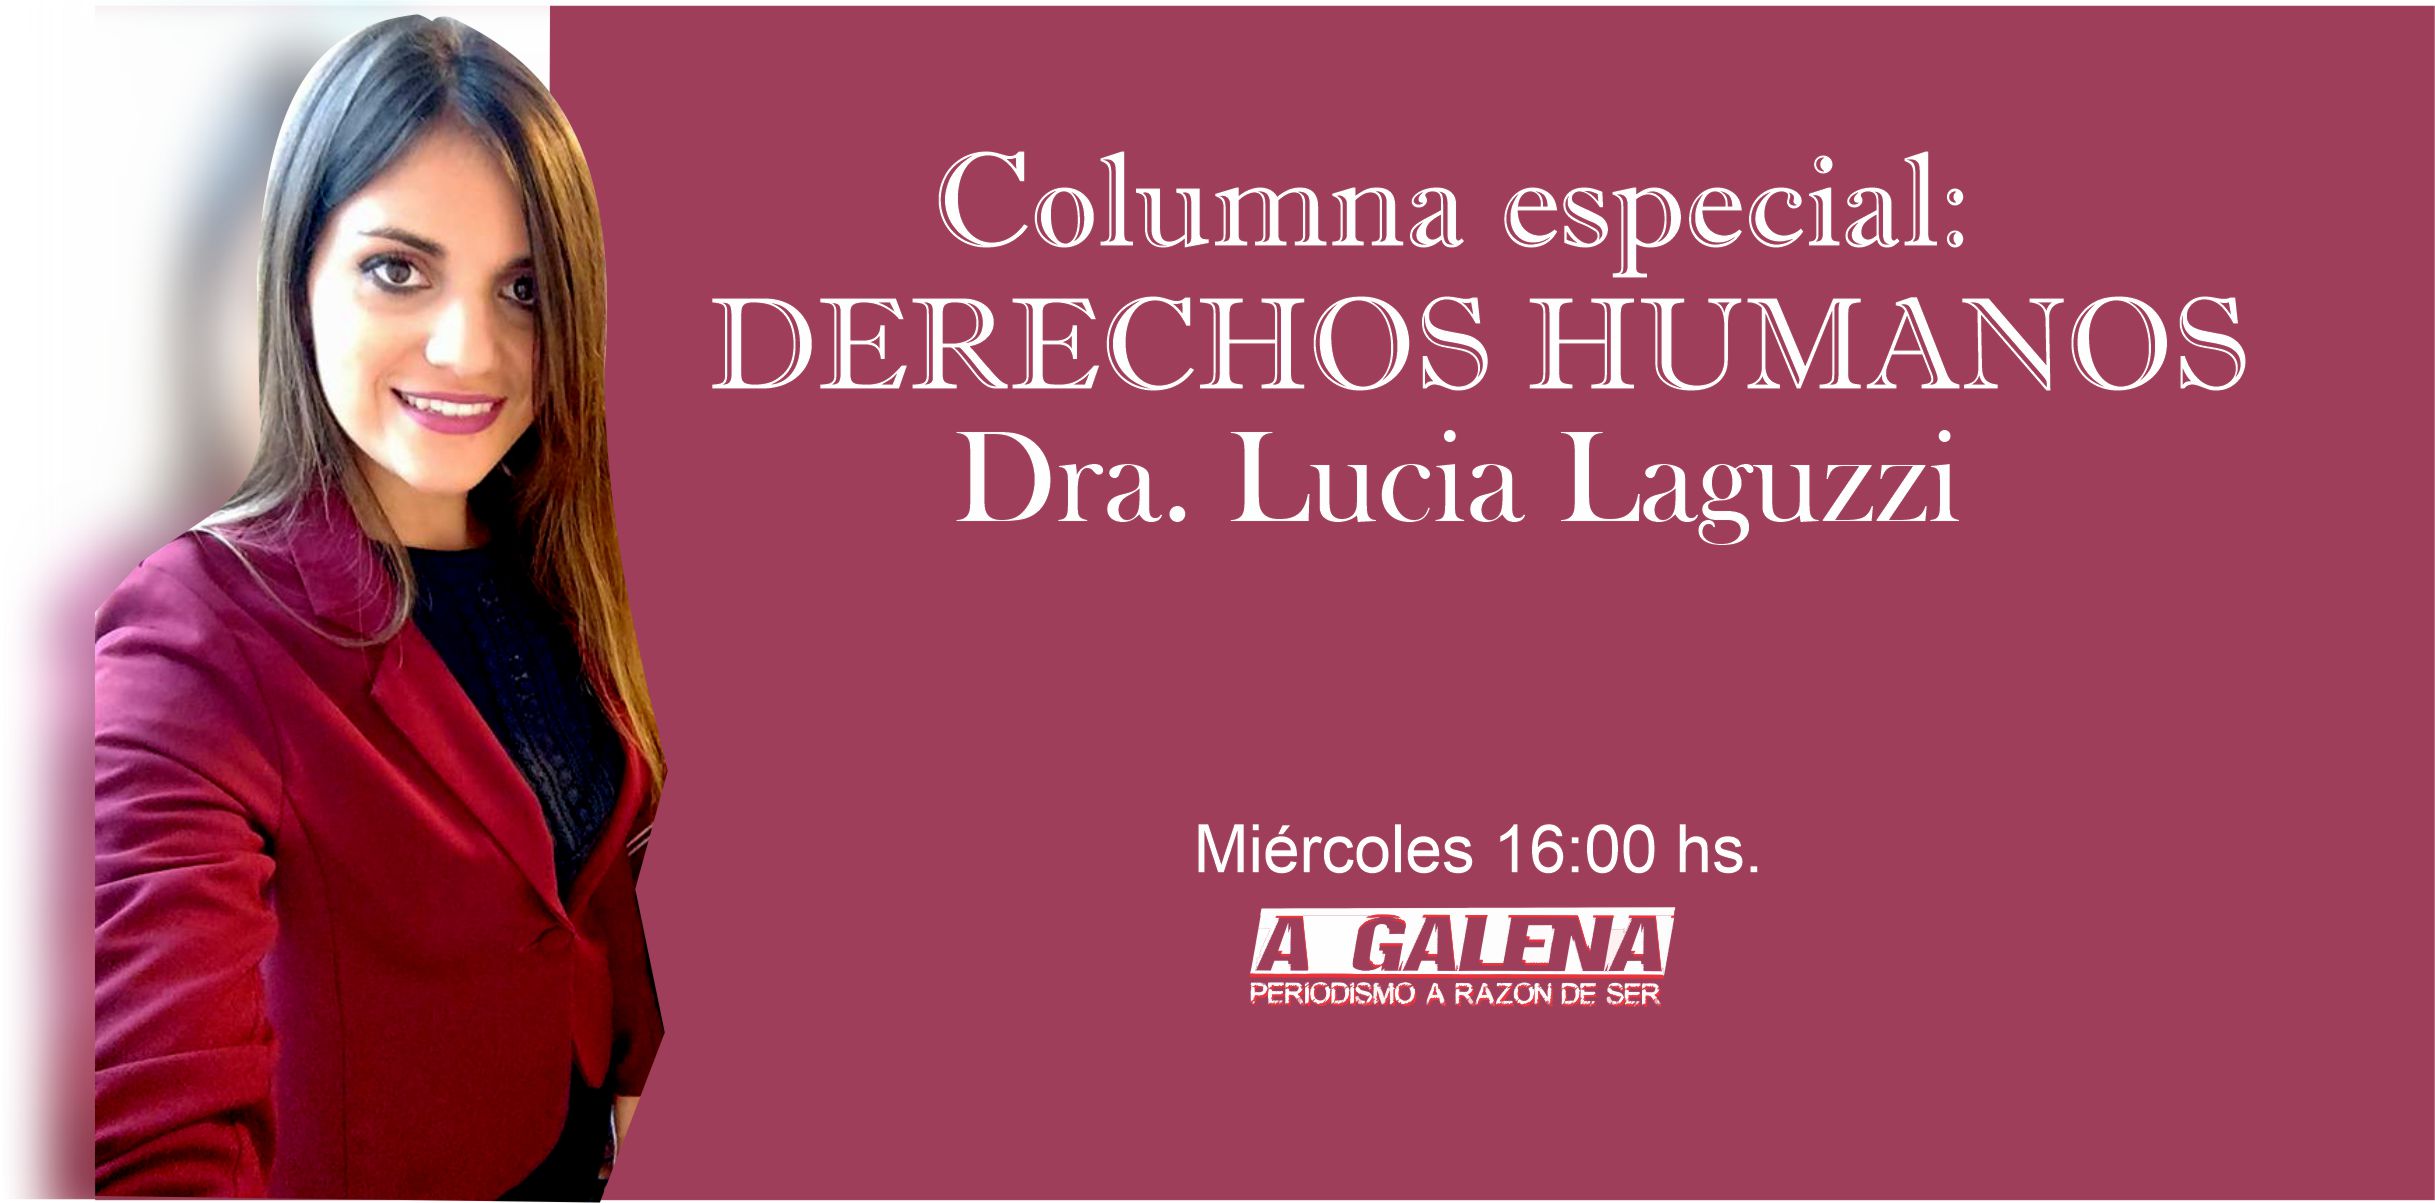  Columna de Derechos Humanos – Dra. Luciana Laguzzi